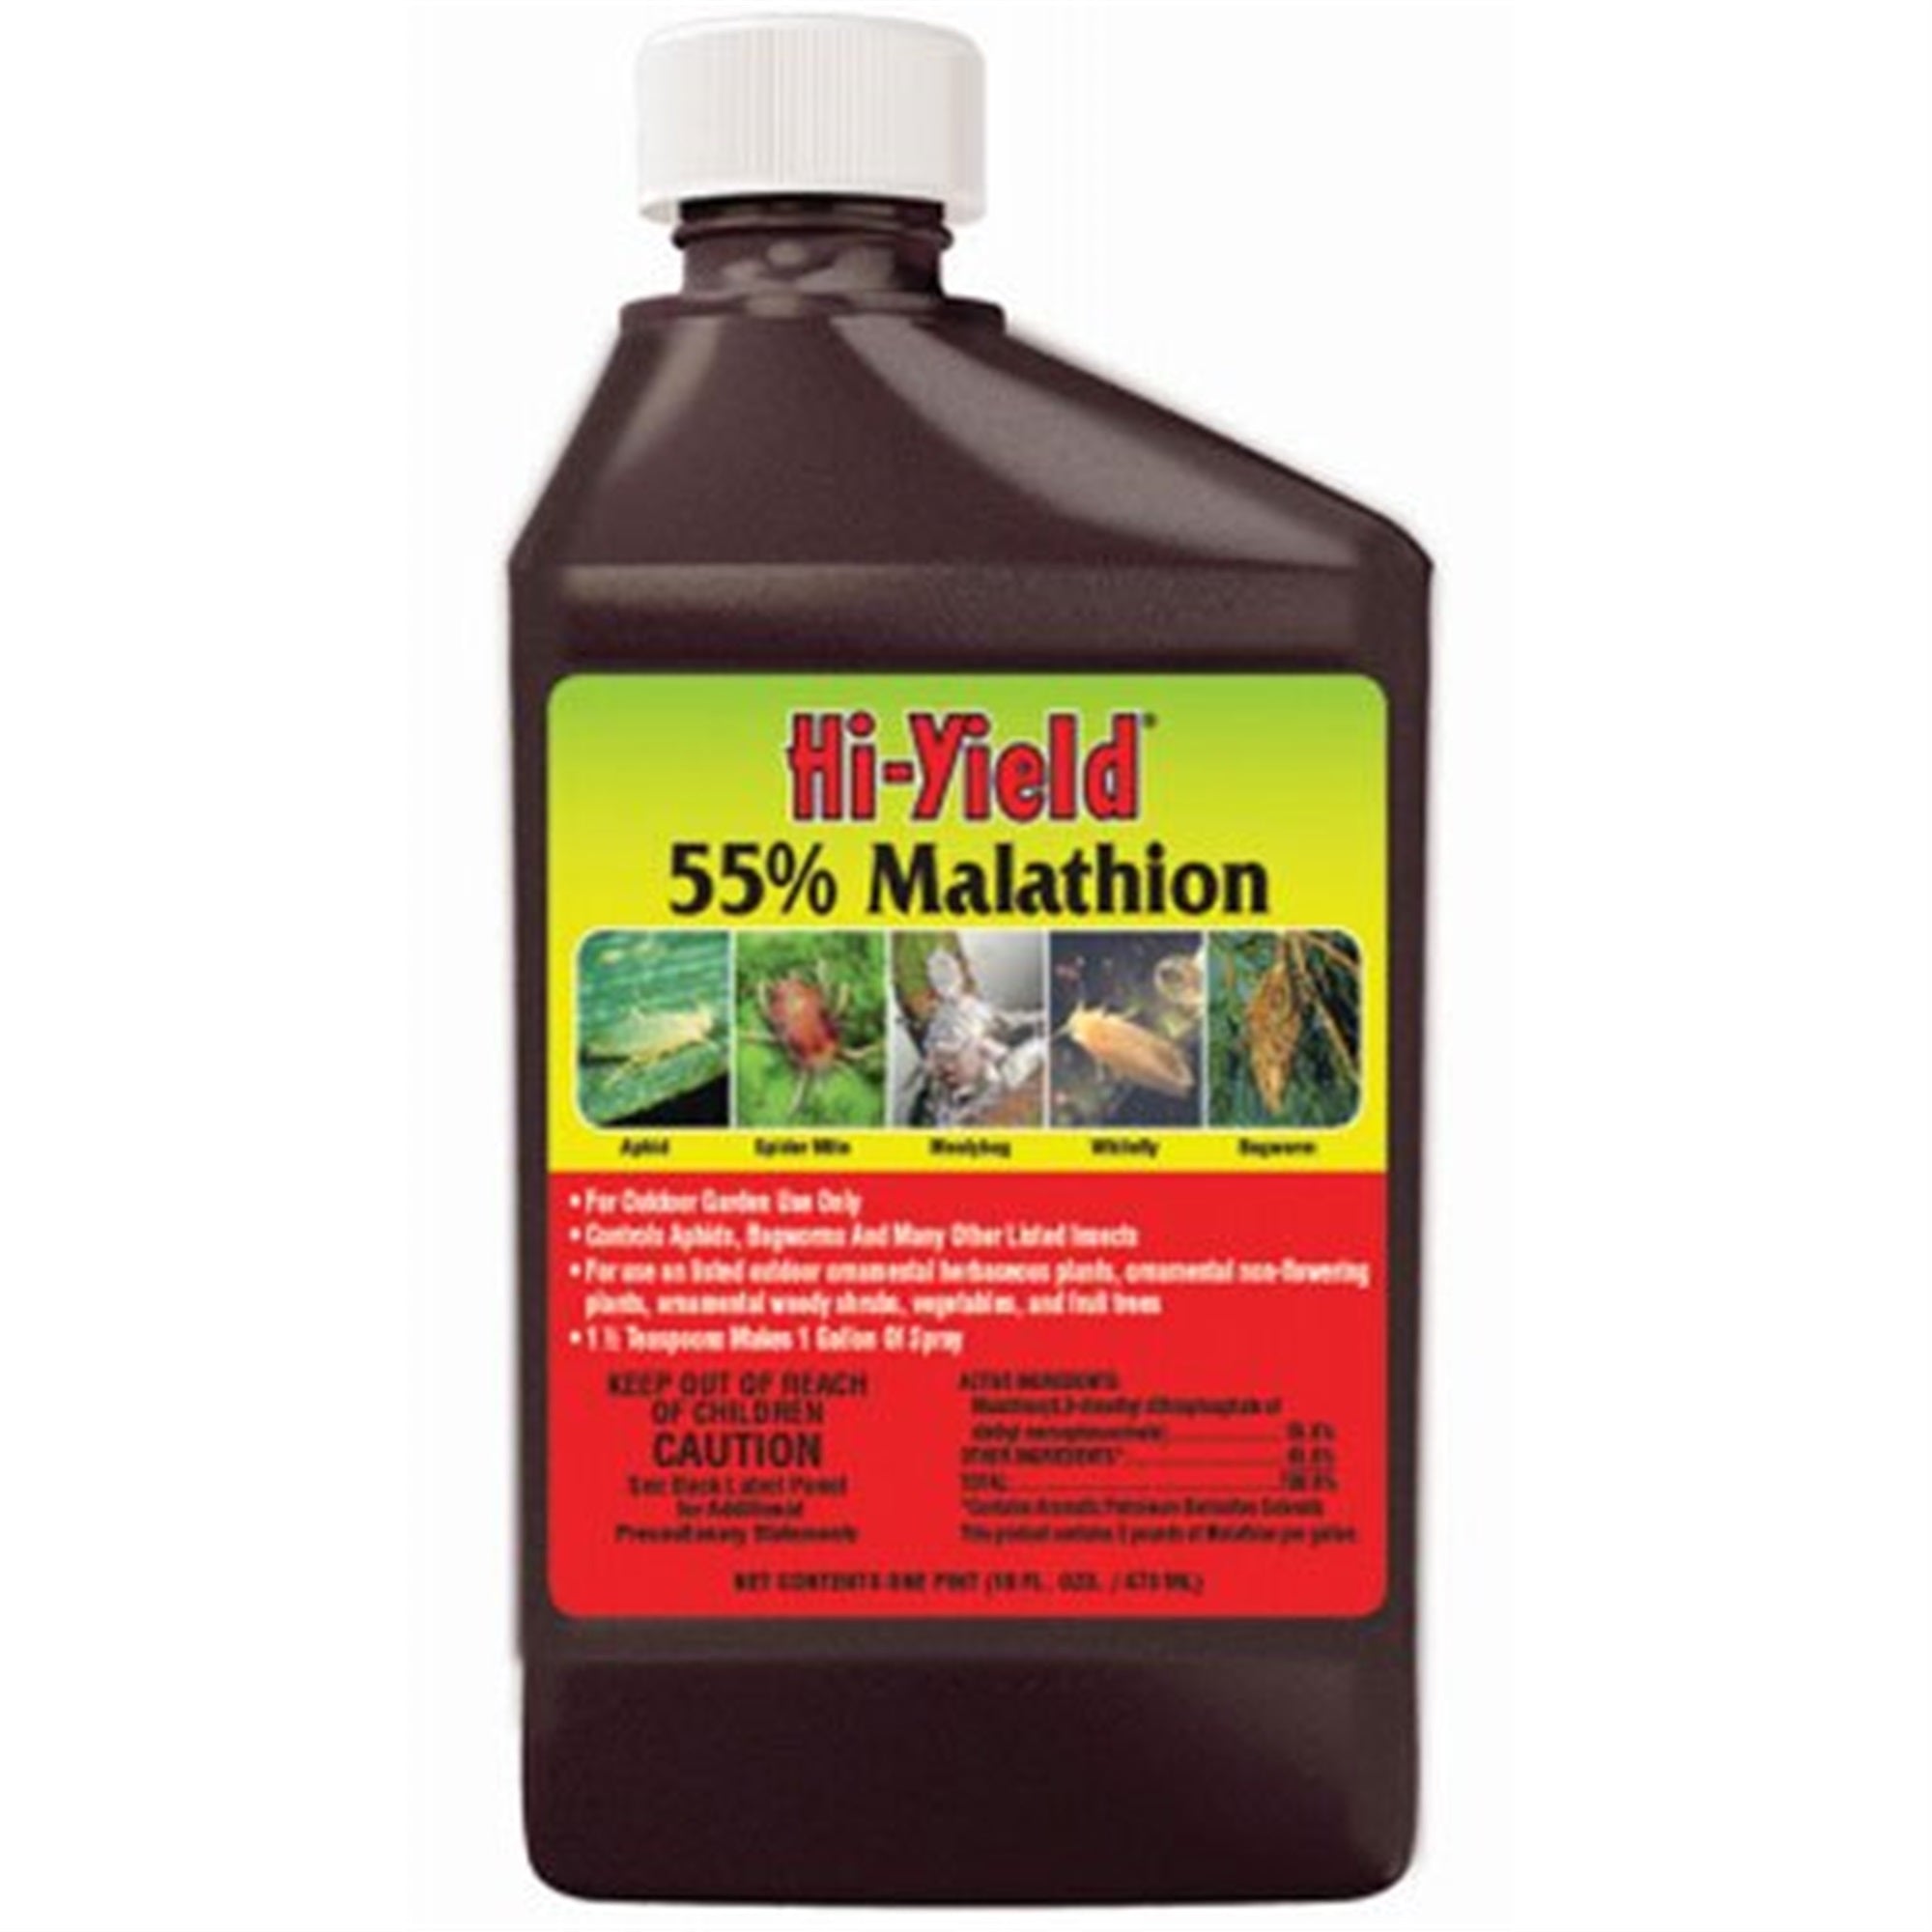 Hi-Yield 55% Malathion Insect Spray, 16 oz